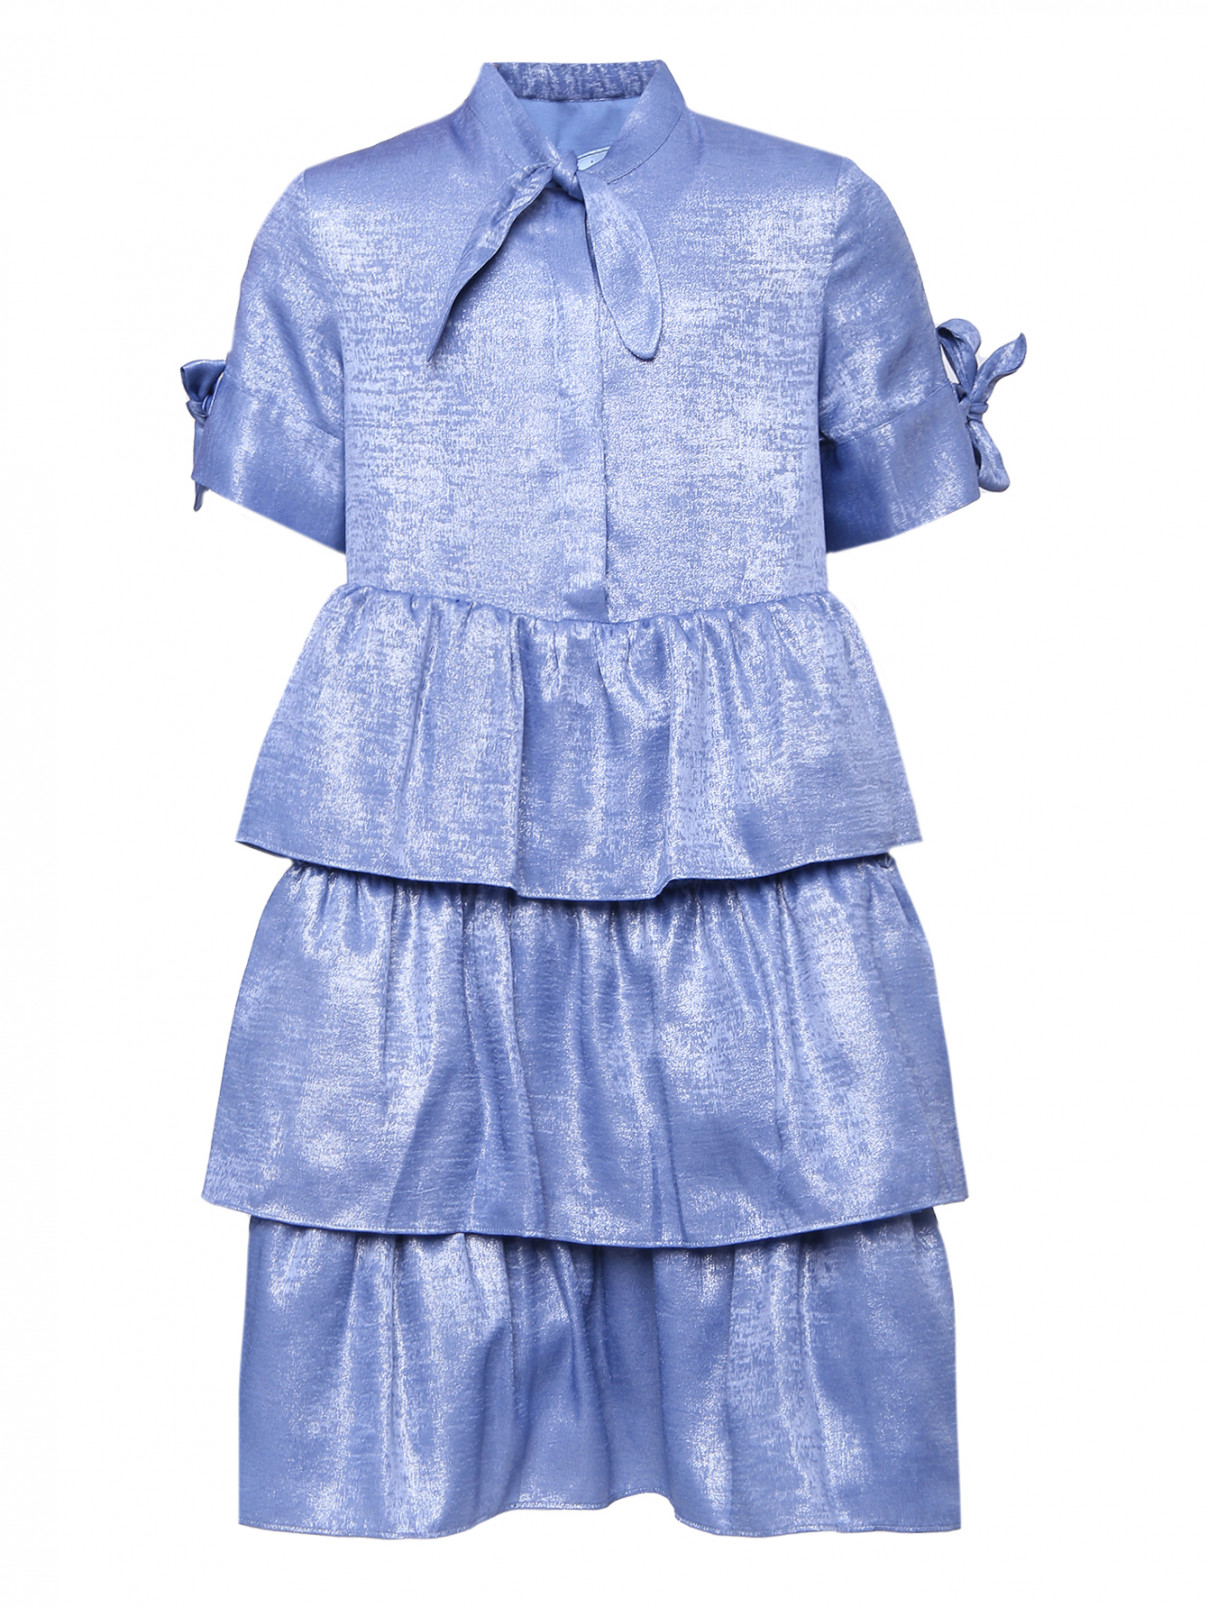 Объемное платье с воланами MiMiSol  –  Общий вид  – Цвет:  Синий